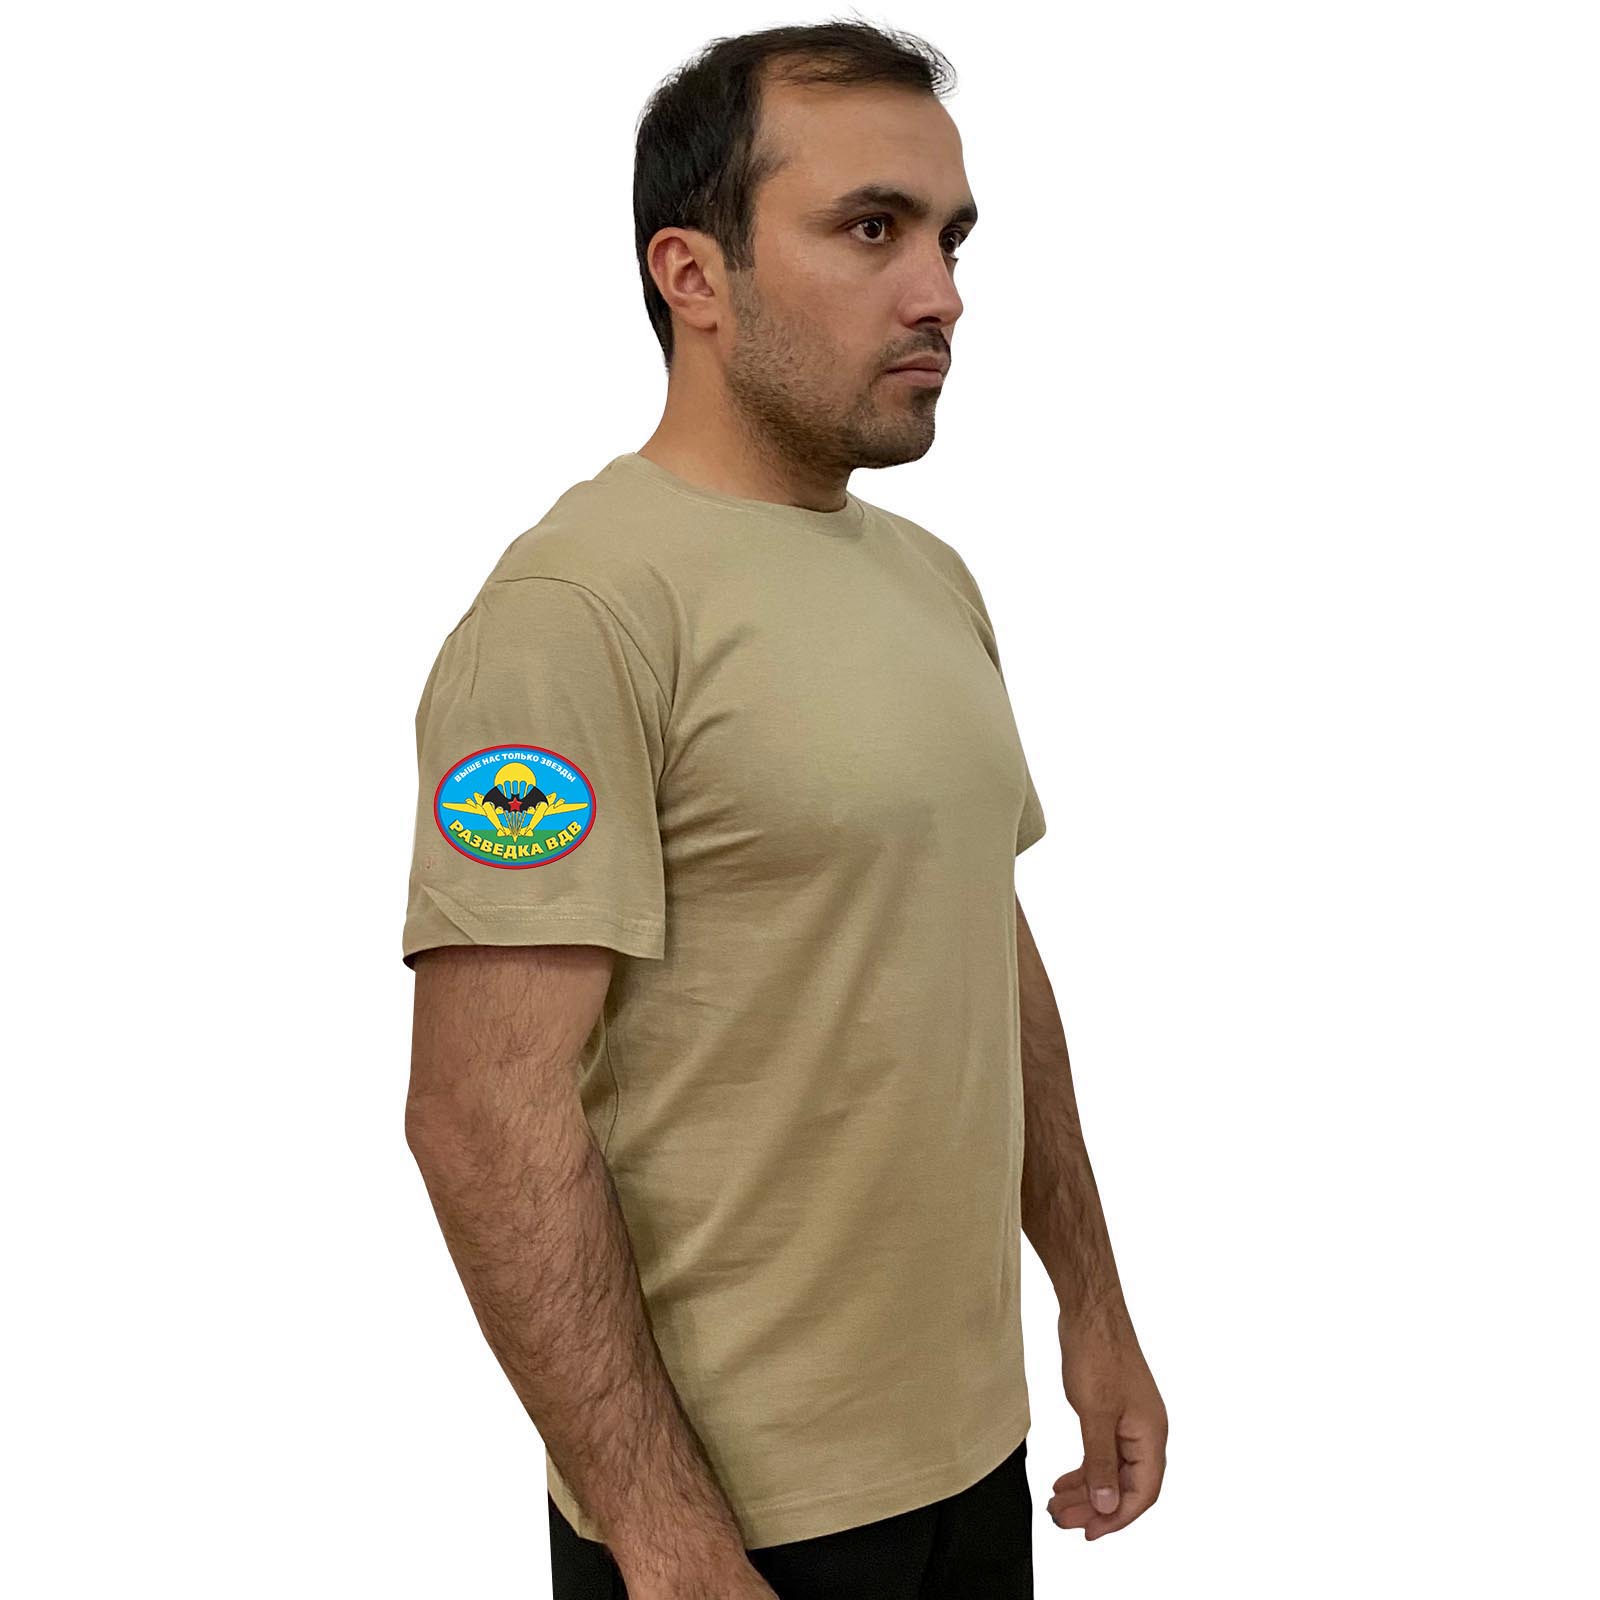 Песочная футболка с термотрансфером "Разведка ВДВ" на рукаве